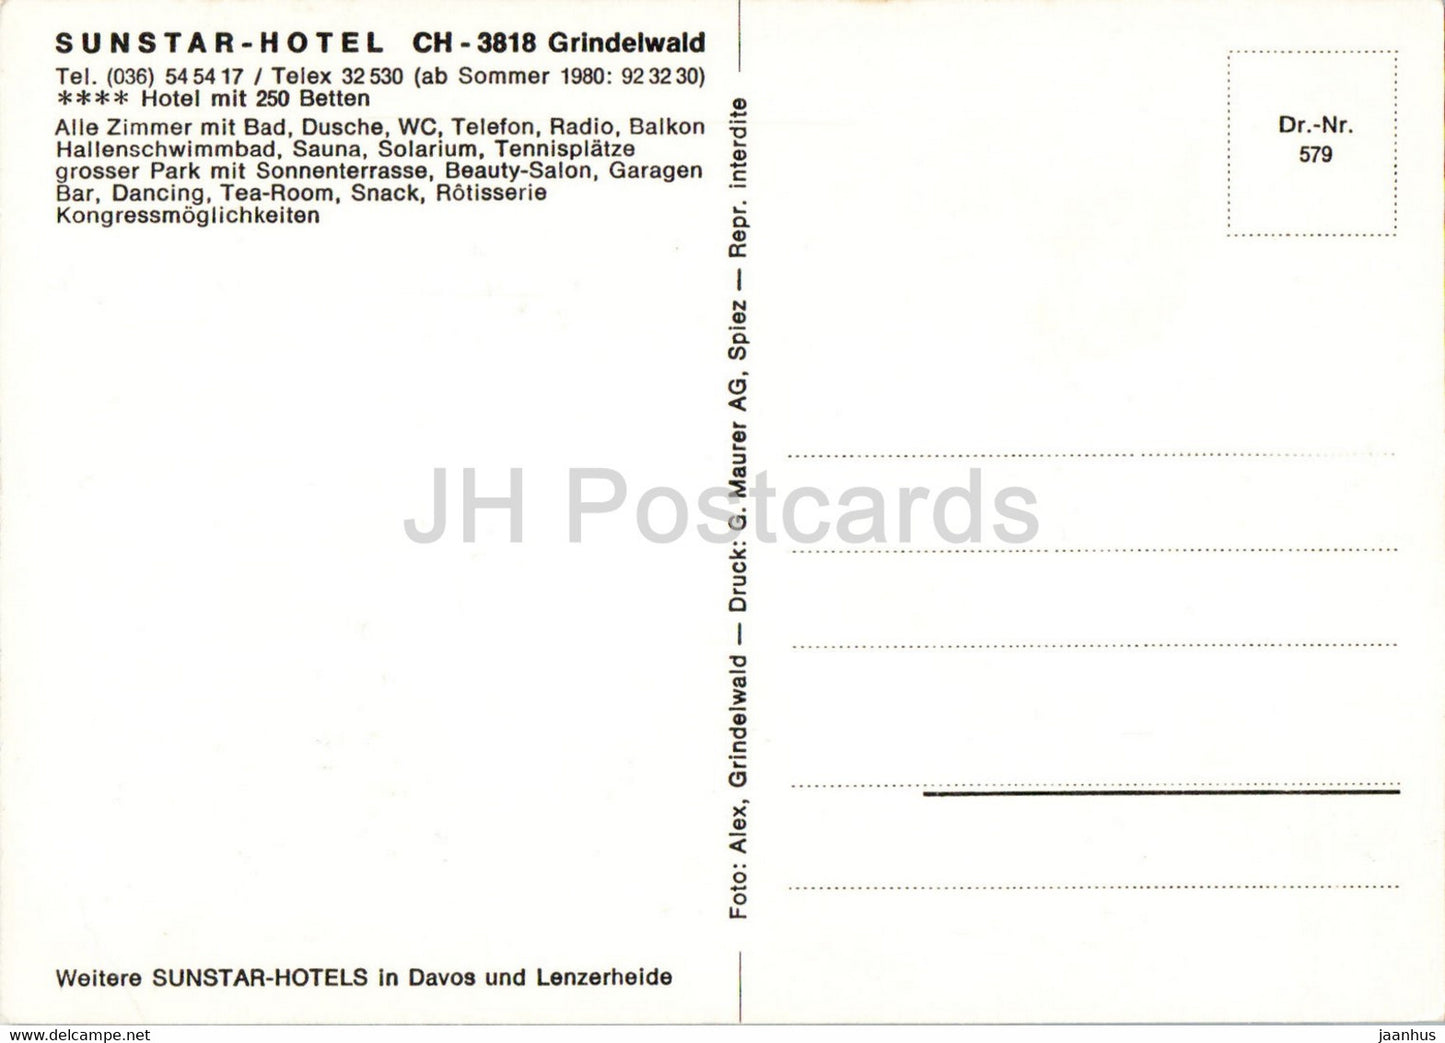 Sunstar Hotel Grindelwald - Suisse - inutilisé